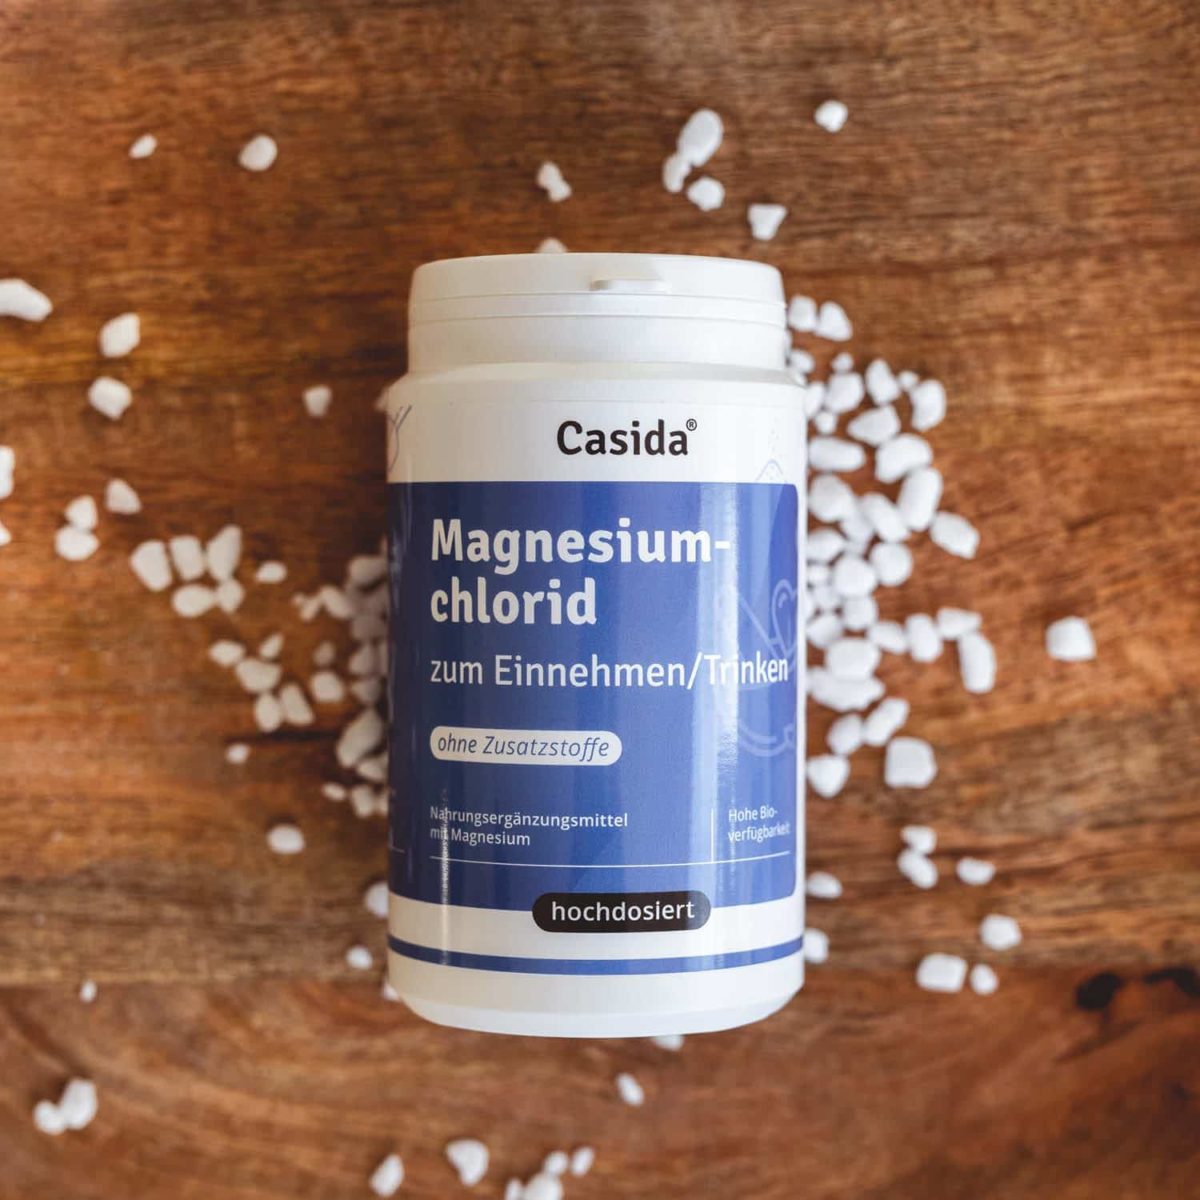 Casida Magnesium Chloride Food Supplement Zechstein 210 g 15190615 PZN Apotheke Saft Wasser Bioverfügbarkeit8